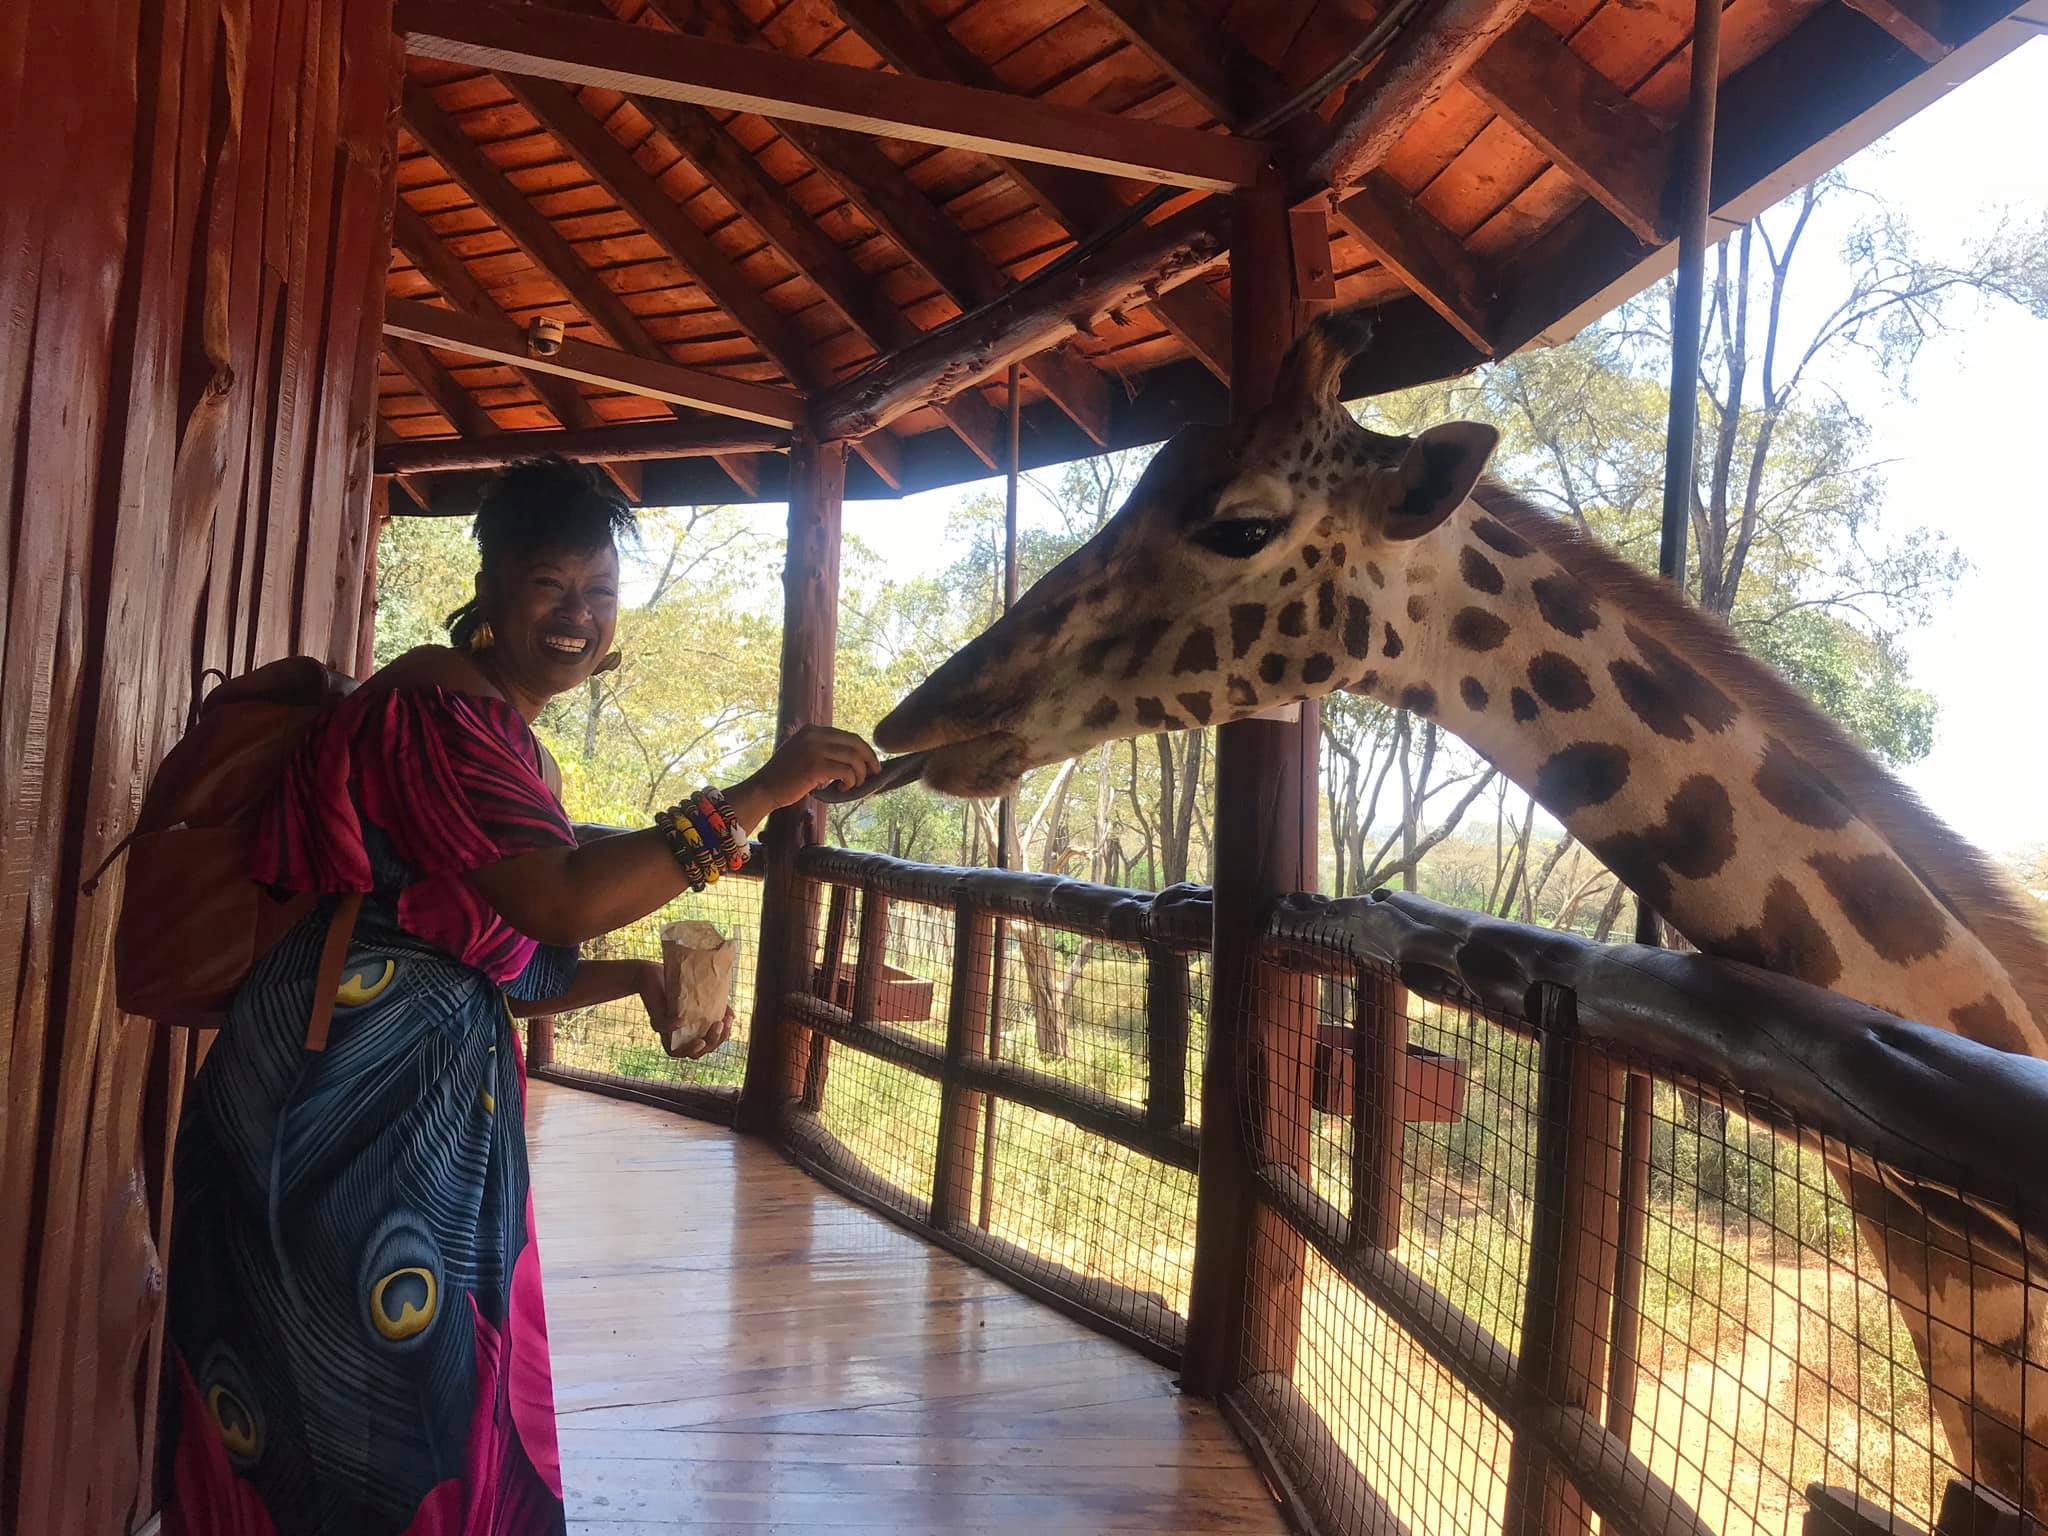  feeding Salma again at Giraffe Center 